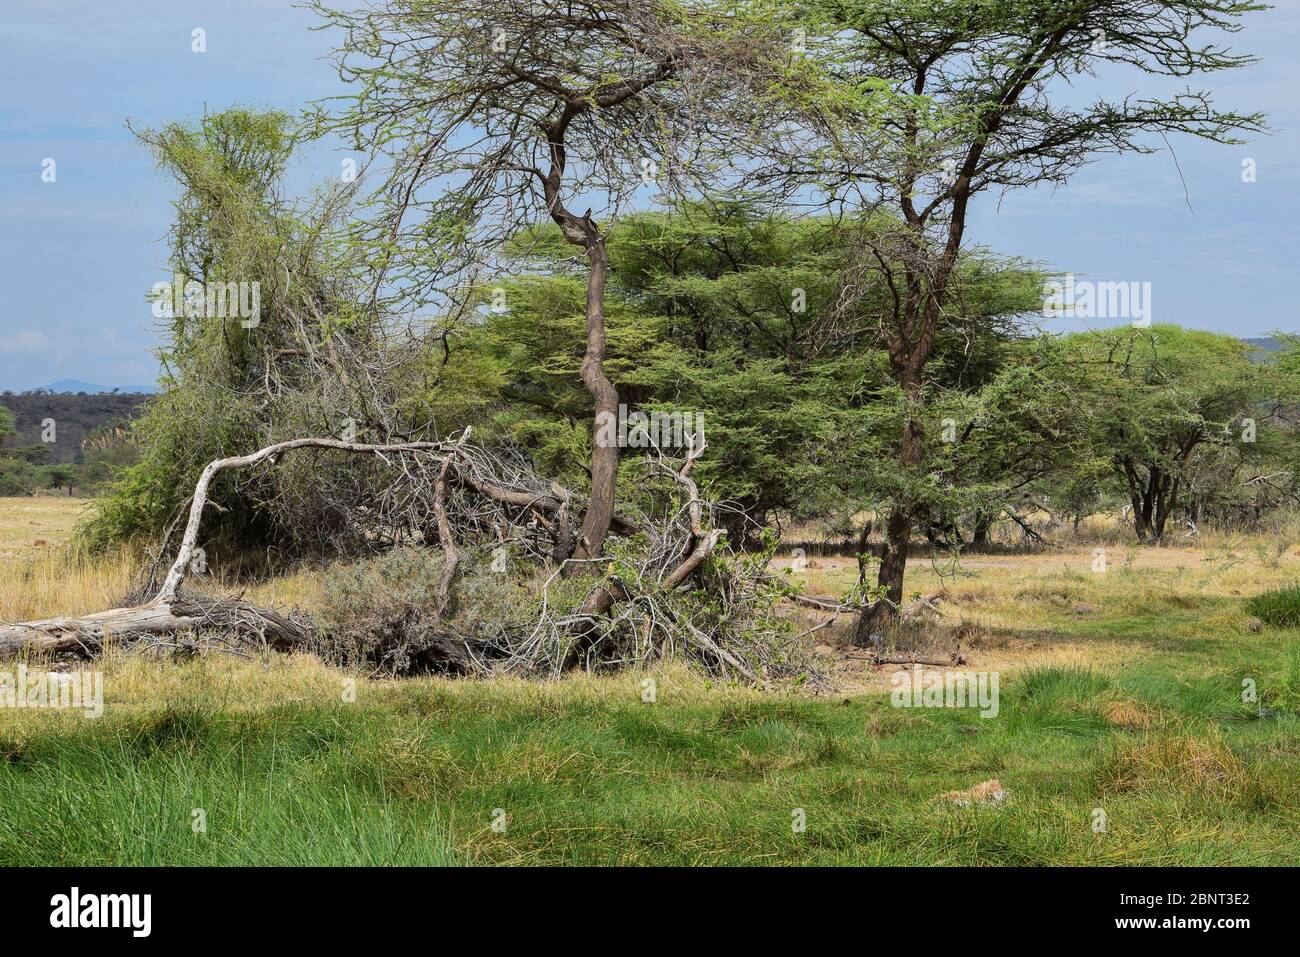 Interwined trees in the wild, Samburu National Reserve, Kenya Stock Photo